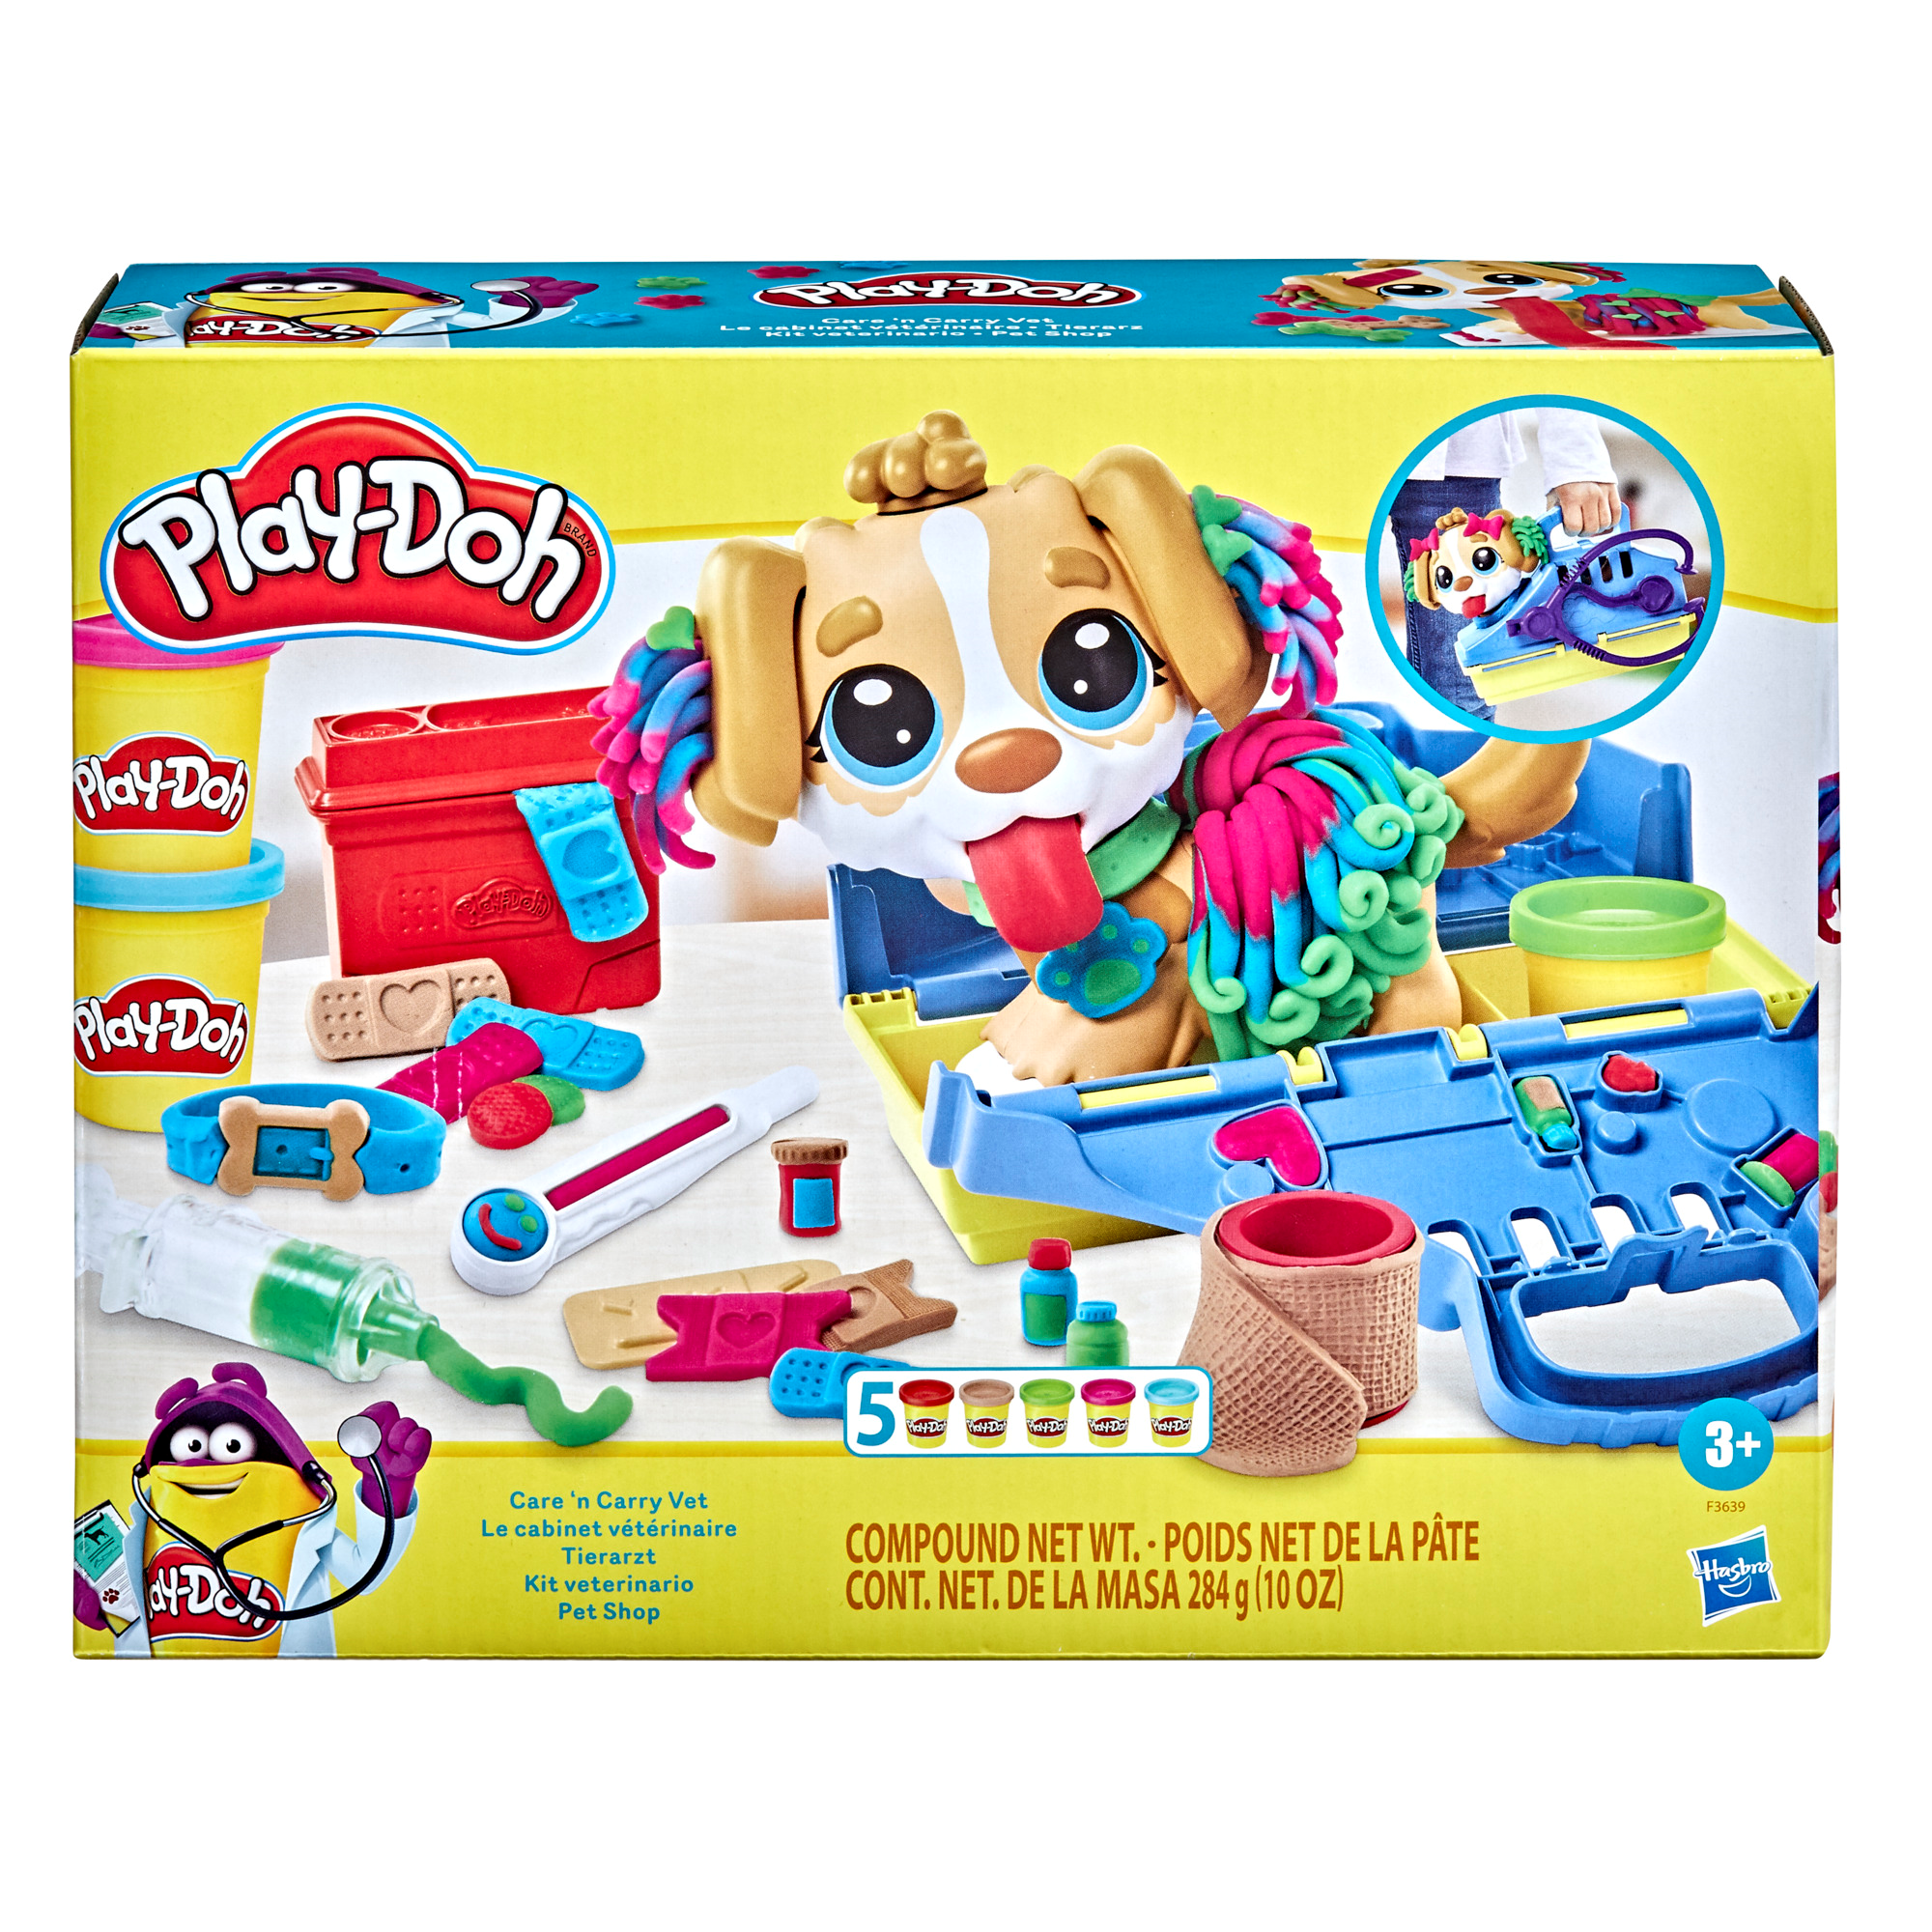 Play-doh - set da veterinario, playset con 10 strumenti e 5 colori di pasta  da modellare atossica, cane giocattolo per bambini dai 3 anni in su - Toys  Center